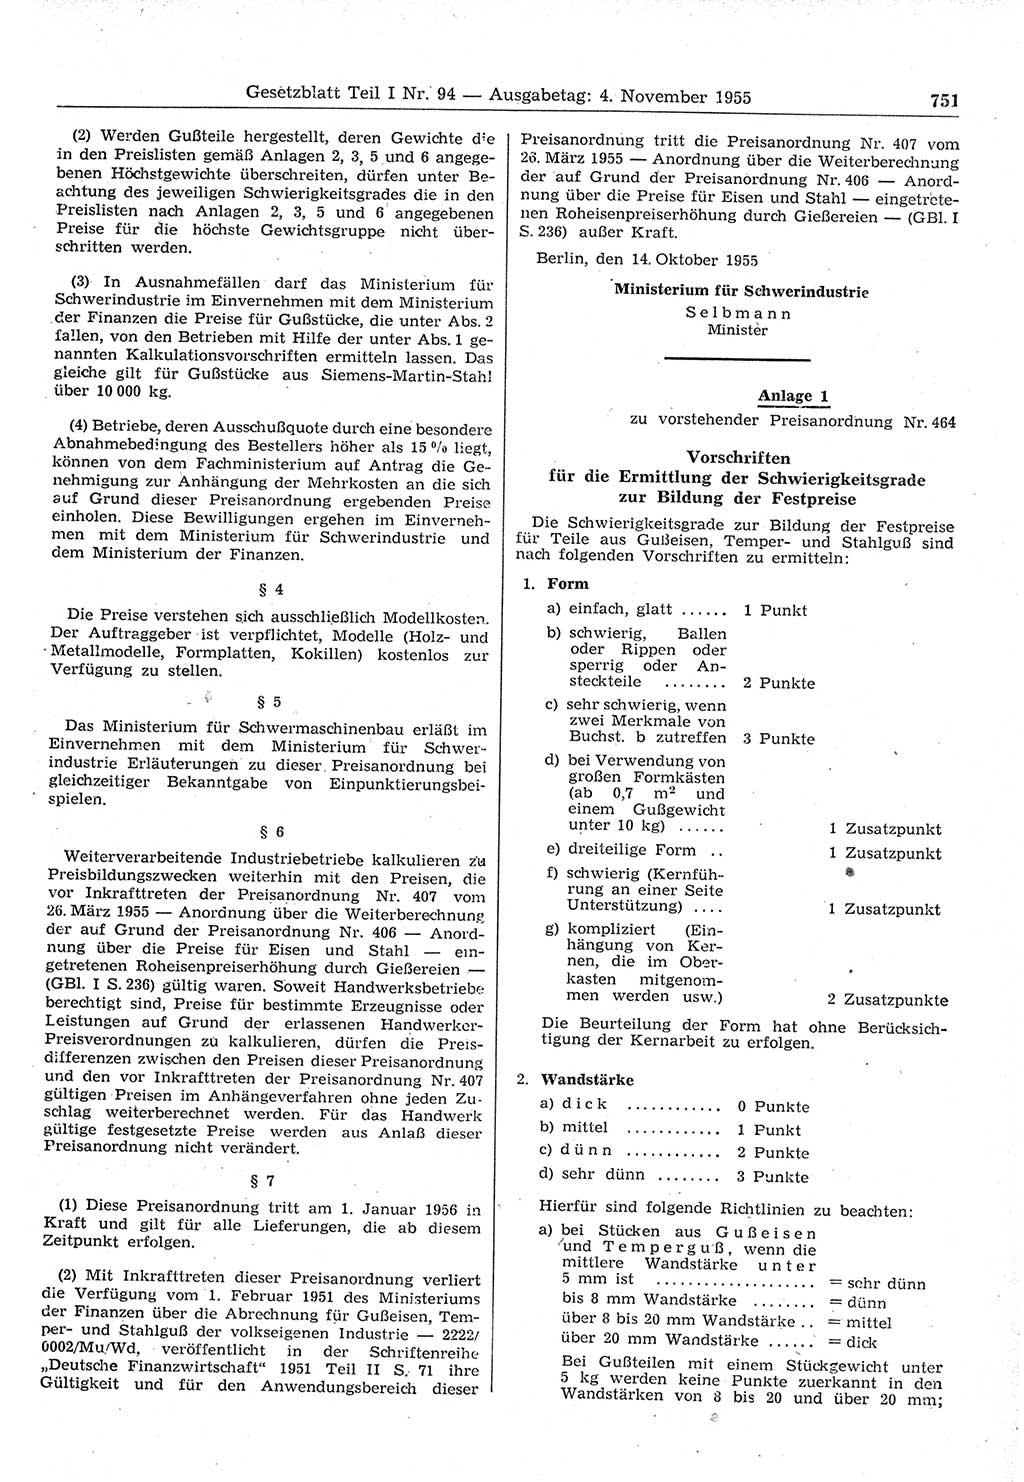 Gesetzblatt (GBl.) der Deutschen Demokratischen Republik (DDR) Teil Ⅰ 1955, Seite 751 (GBl. DDR Ⅰ 1955, S. 751)